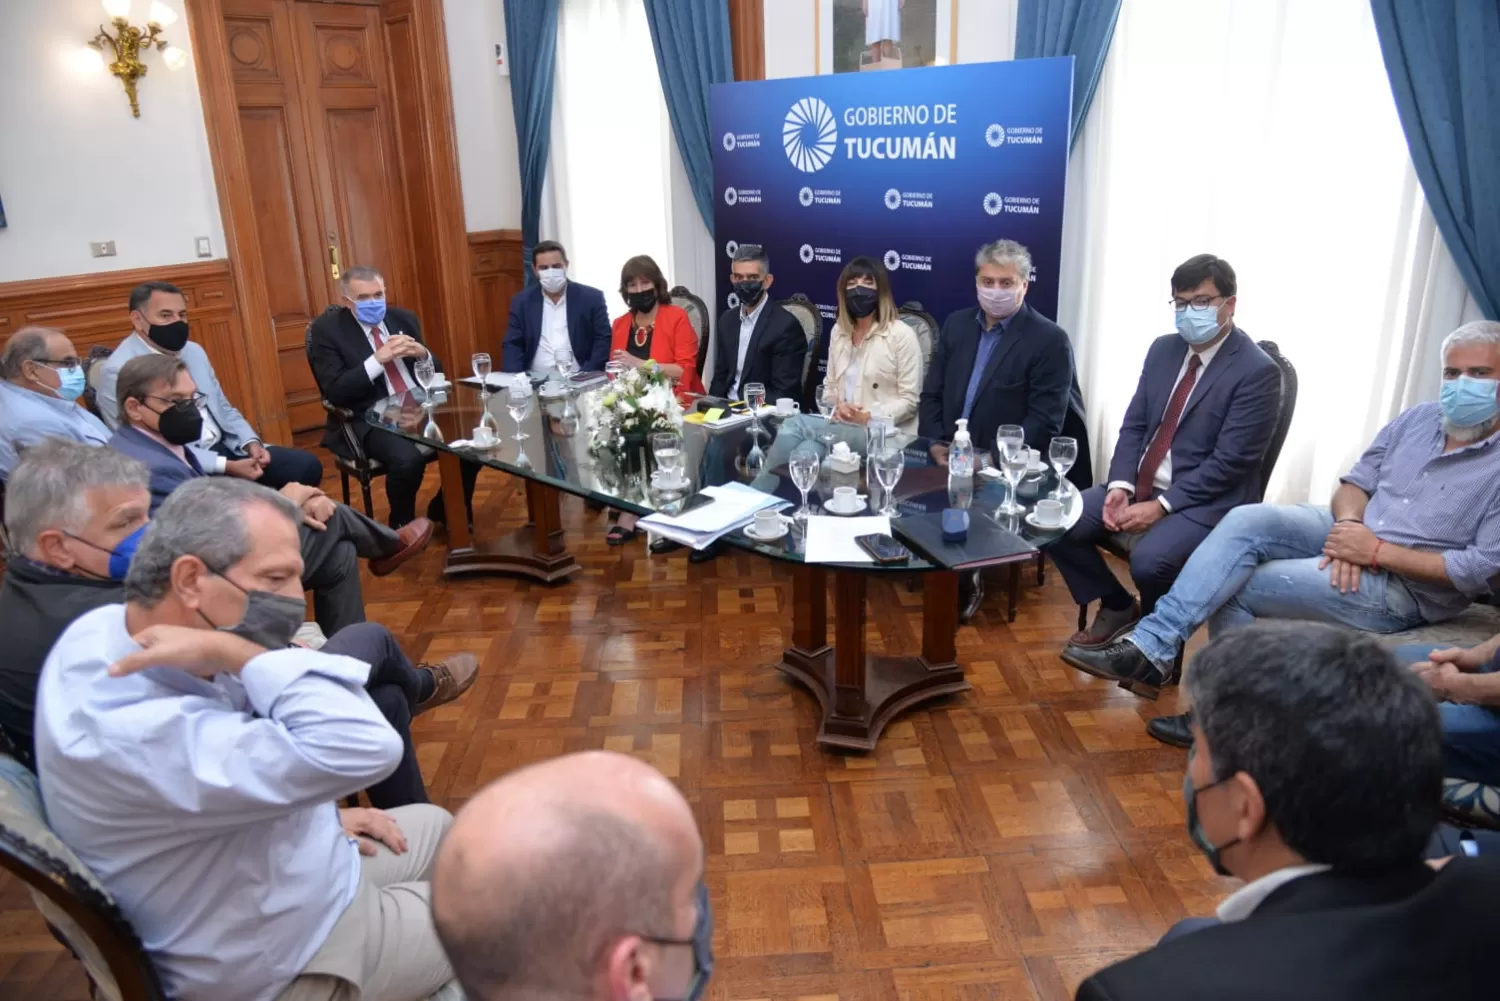 EN CASA DE GOBIERNO. Jaldo encabeza una reunión con los miembros de su gabinete. Foto: Prensa Gobernación